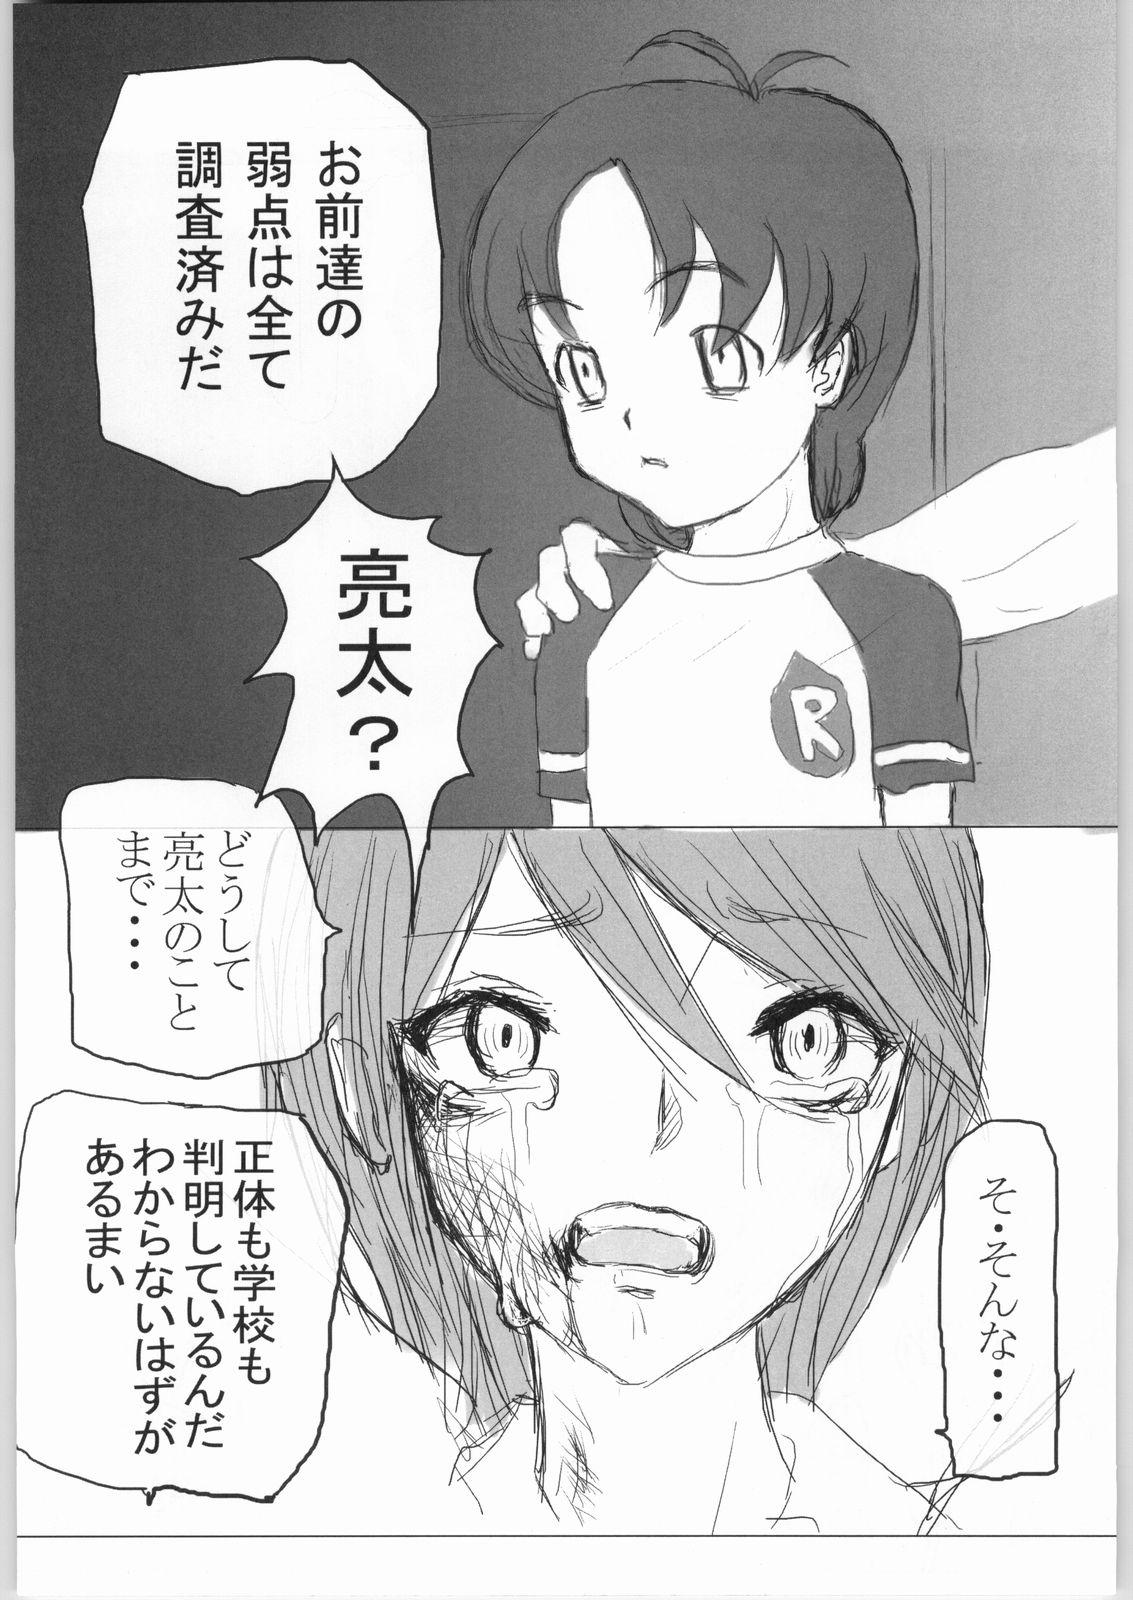 Free Blowjobs Kuro - Futari wa pretty cure | futari wa precure Latex - Page 6